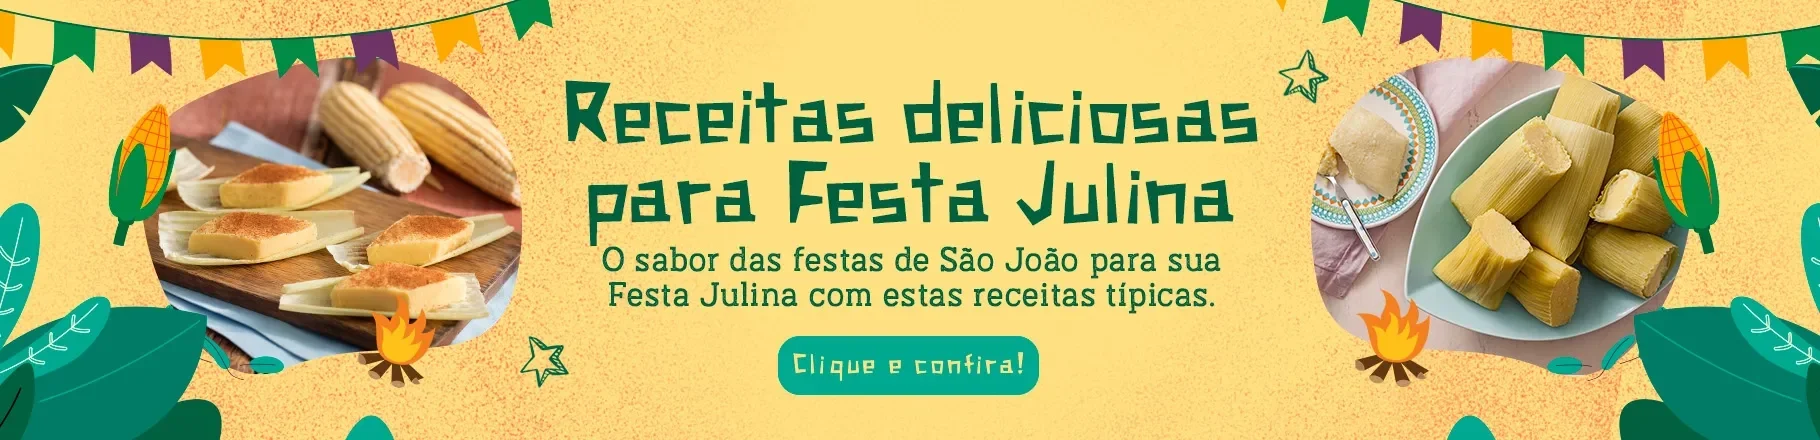 	Imagem com fundo amarelo, dois círculos com fotos de comidas típicas de São João, detalhes e escritos na cor verde.